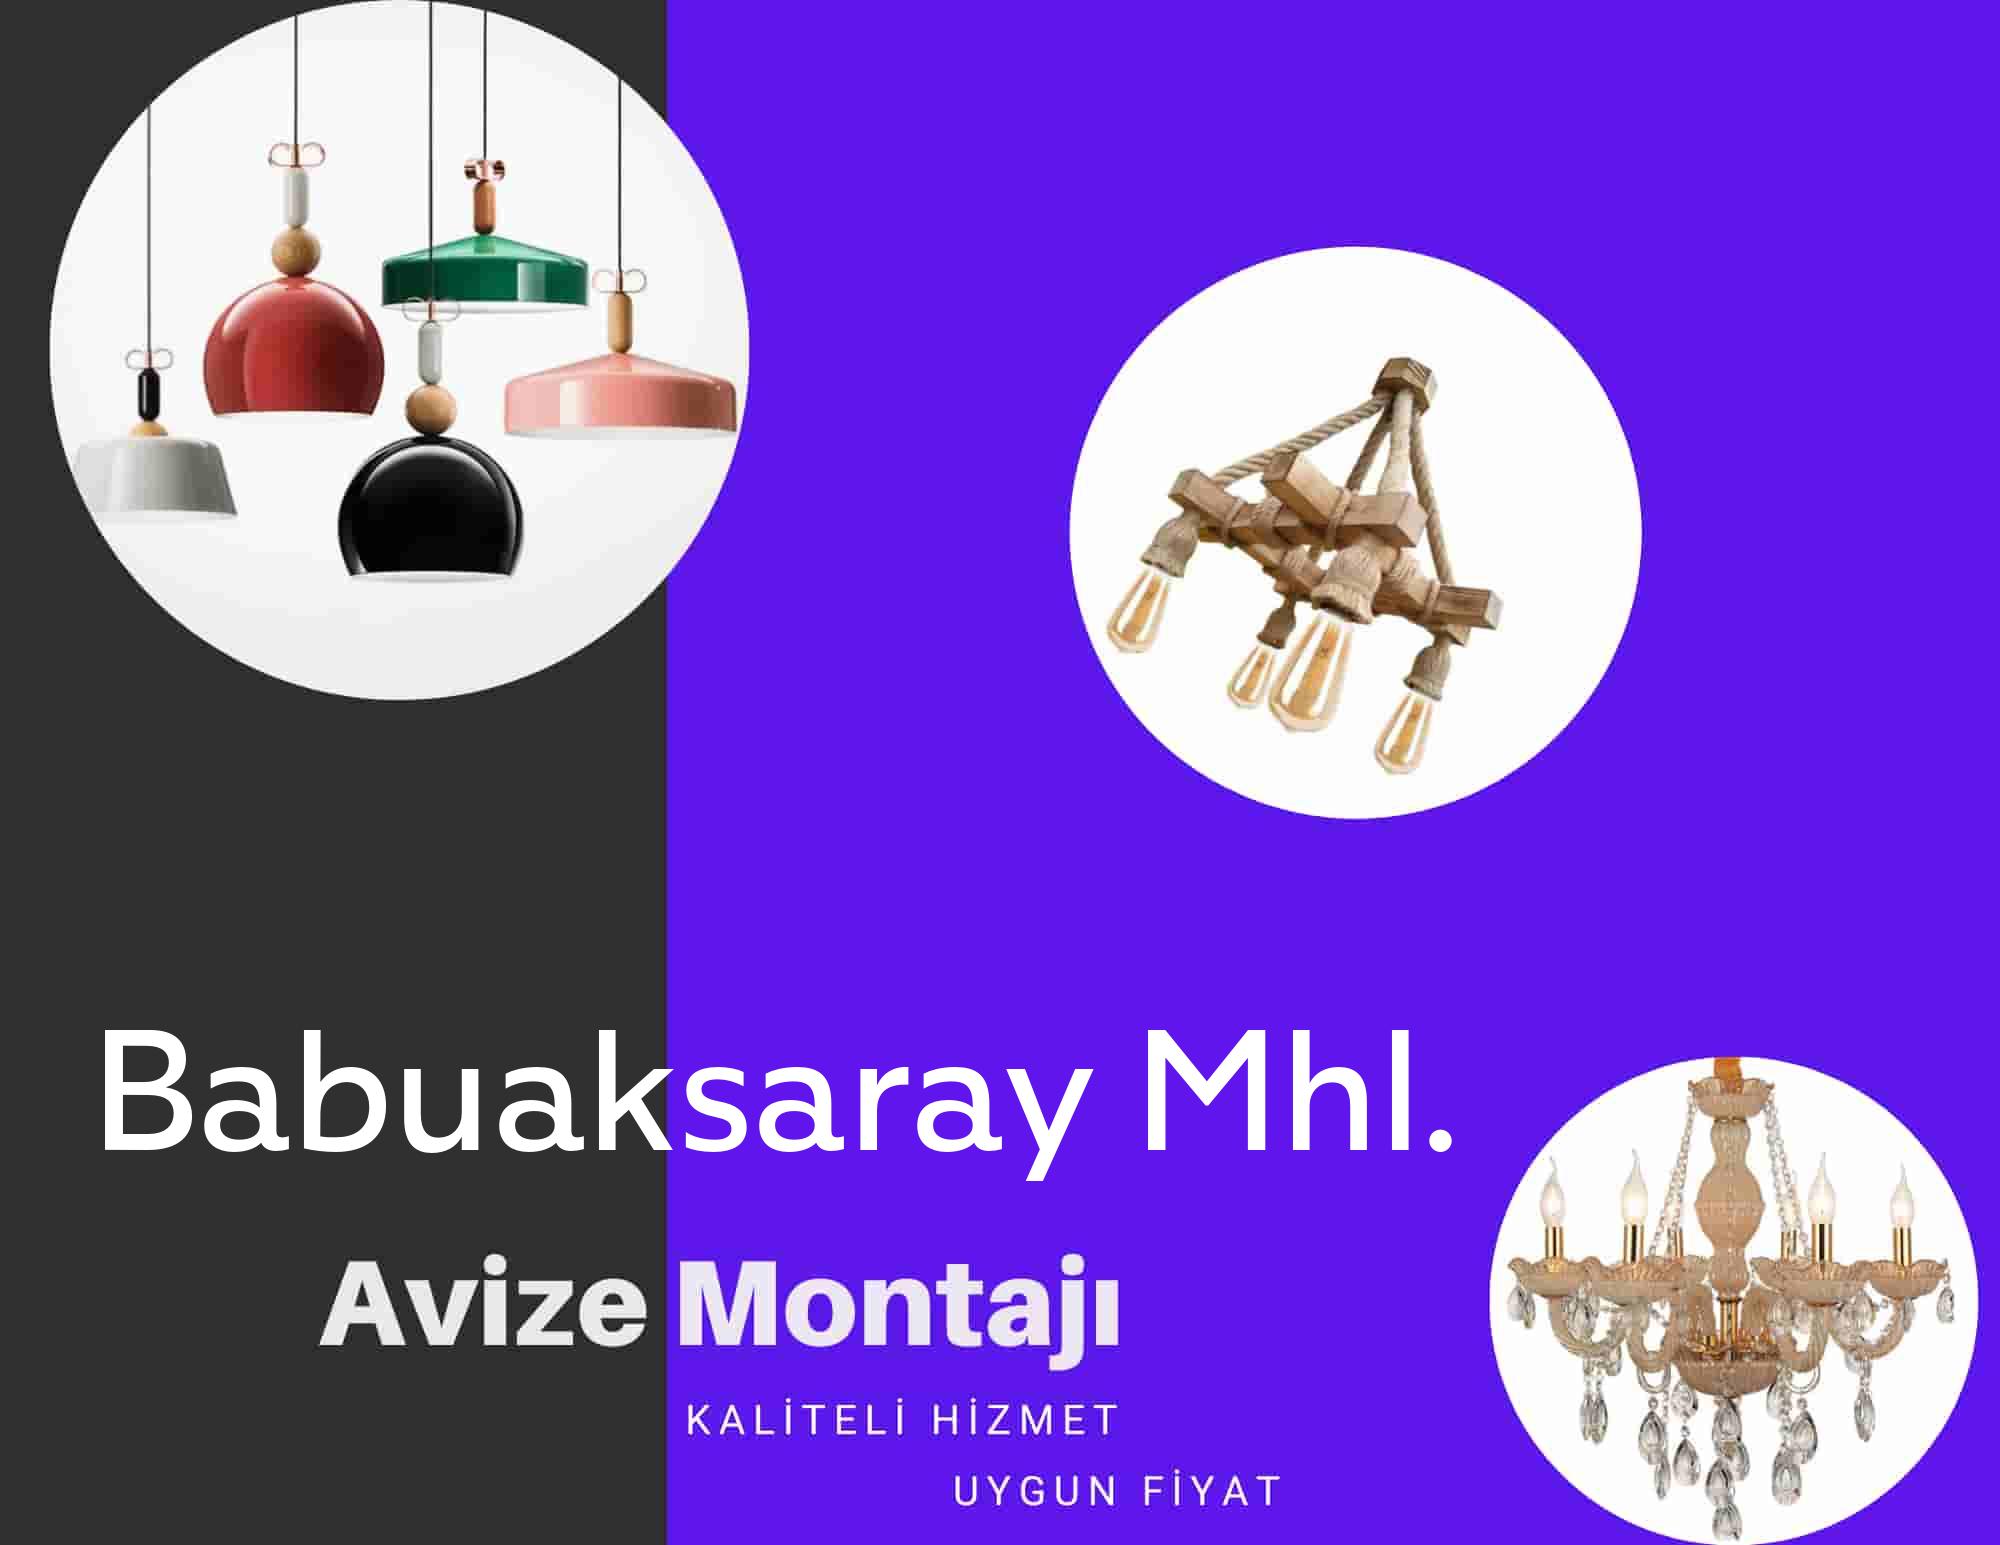 Babuaksaray Mhl.de avize montajı yapan yerler arıyorsanız elektrikcicagir anında size profesyonel avize montajı ustasını yönlendirir.